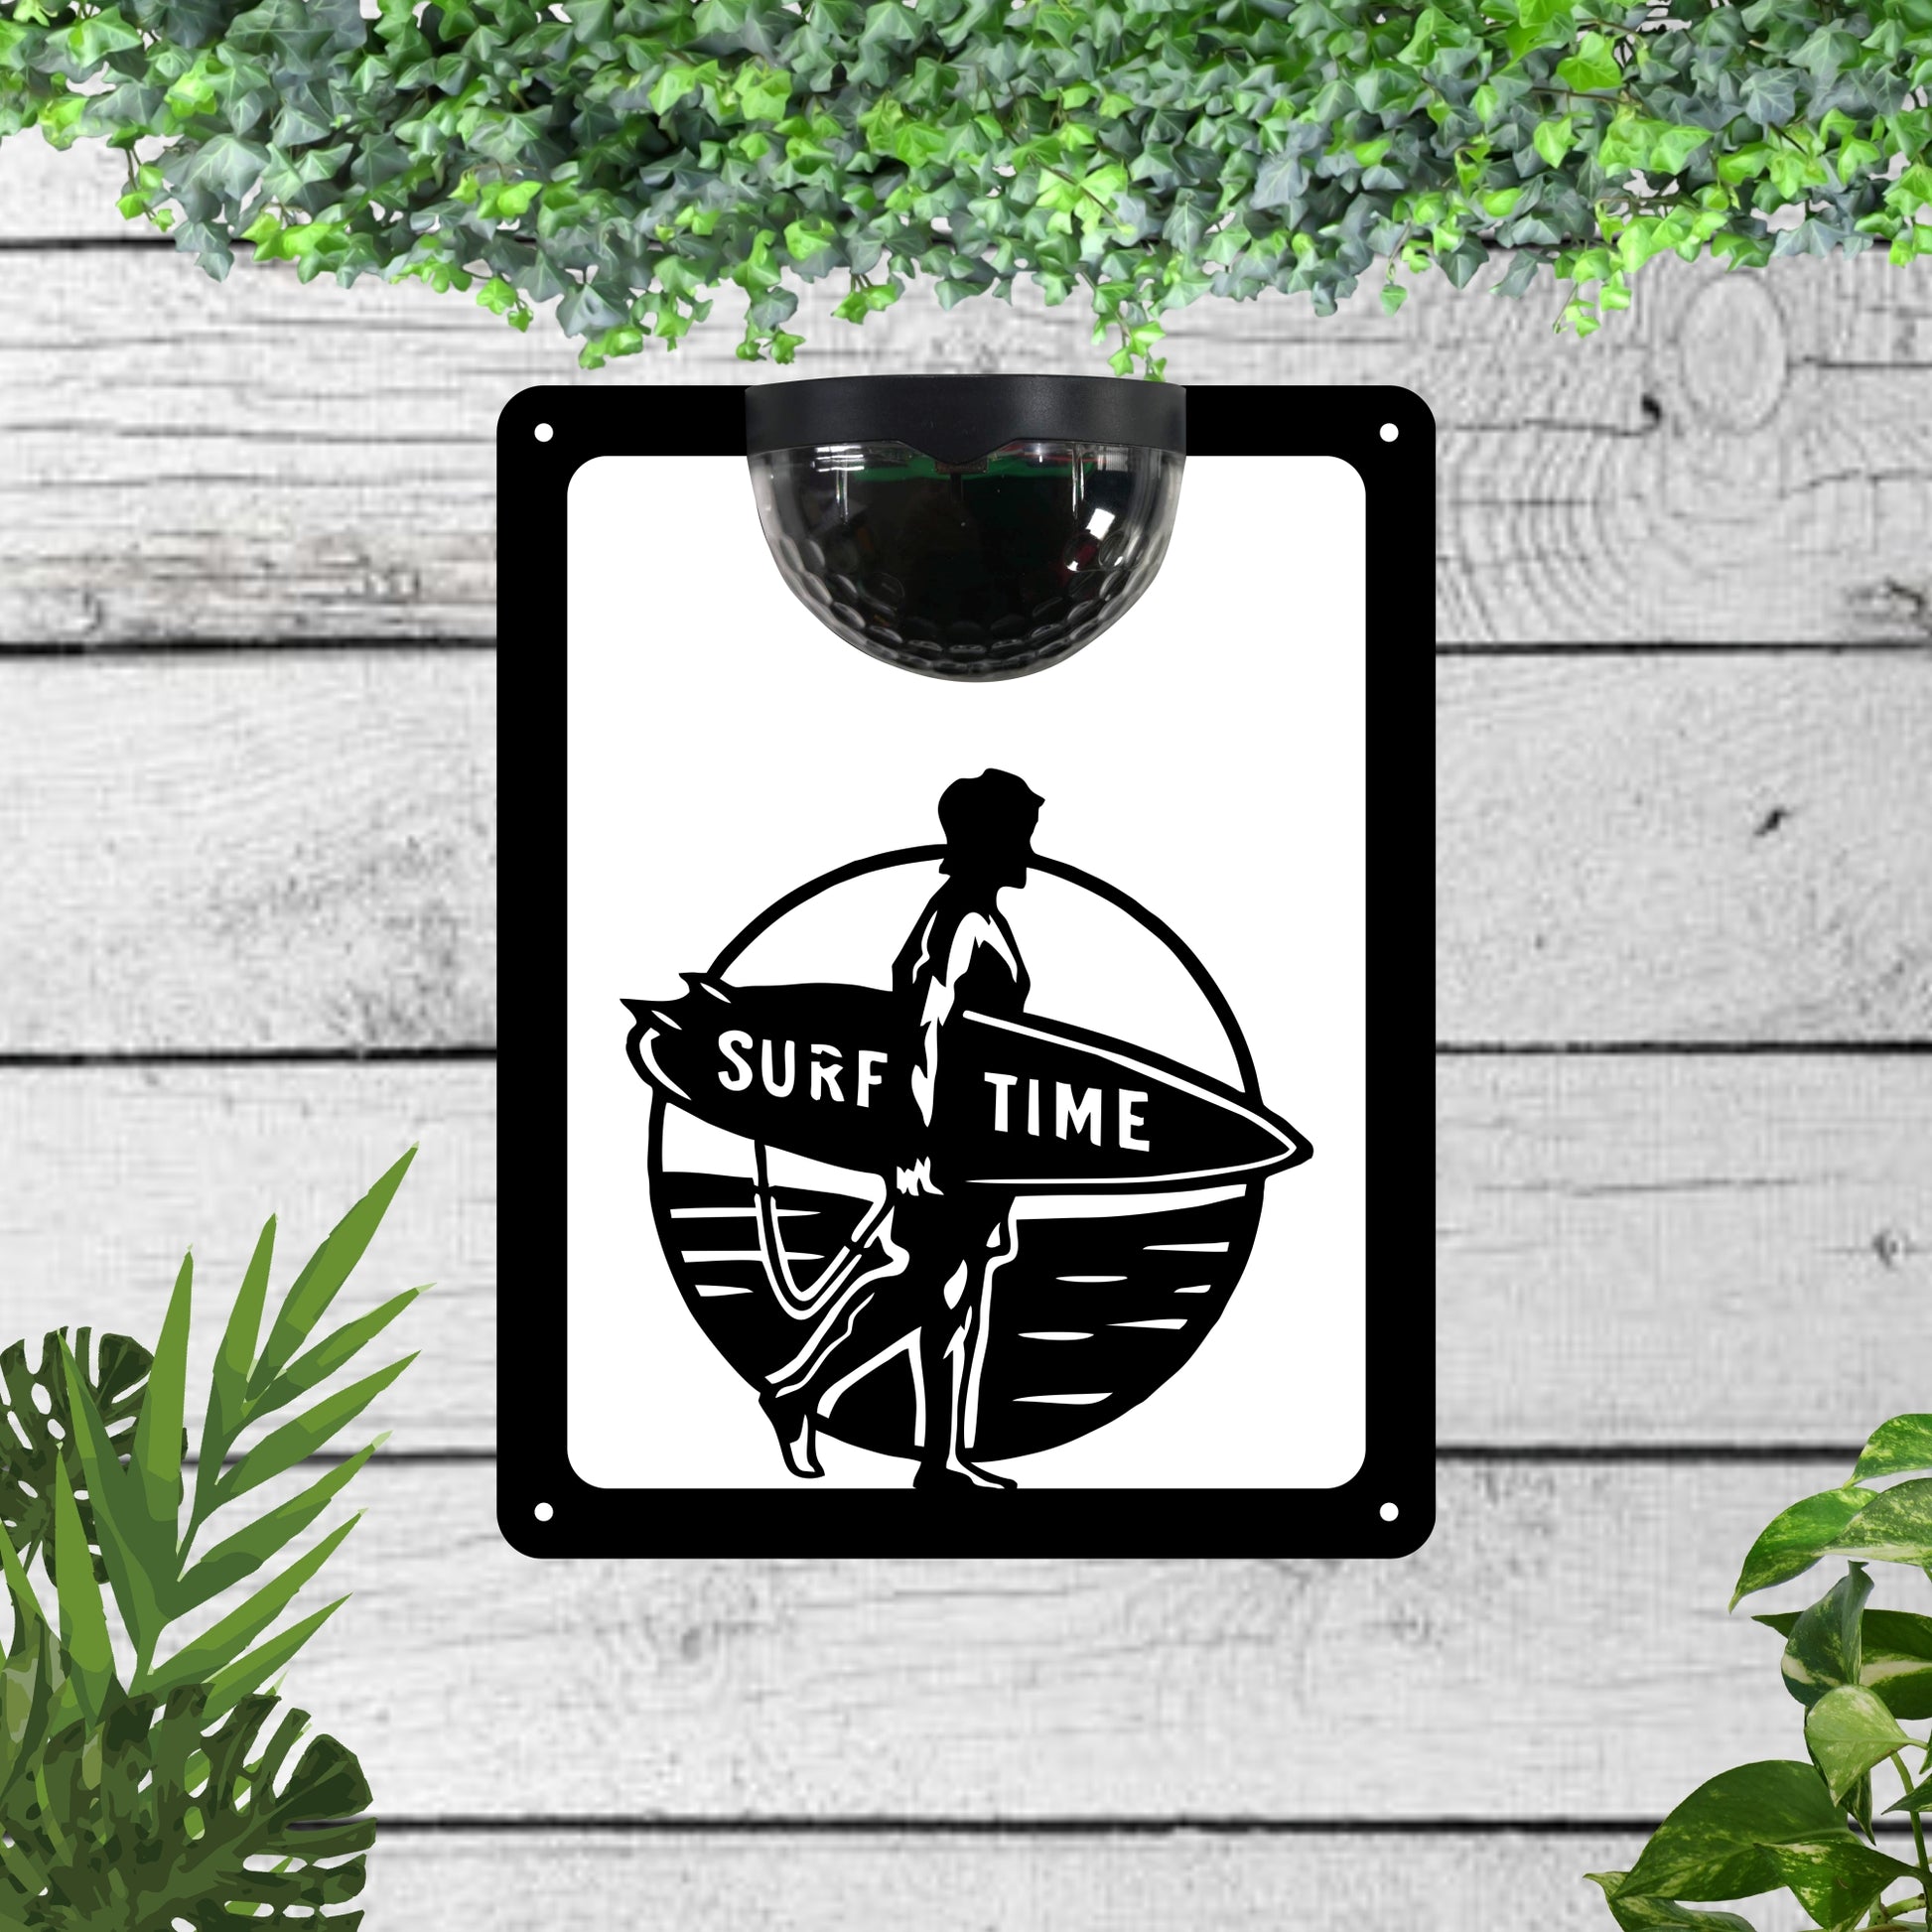 Garden solar wall plaque featuring a surfer | John Alans